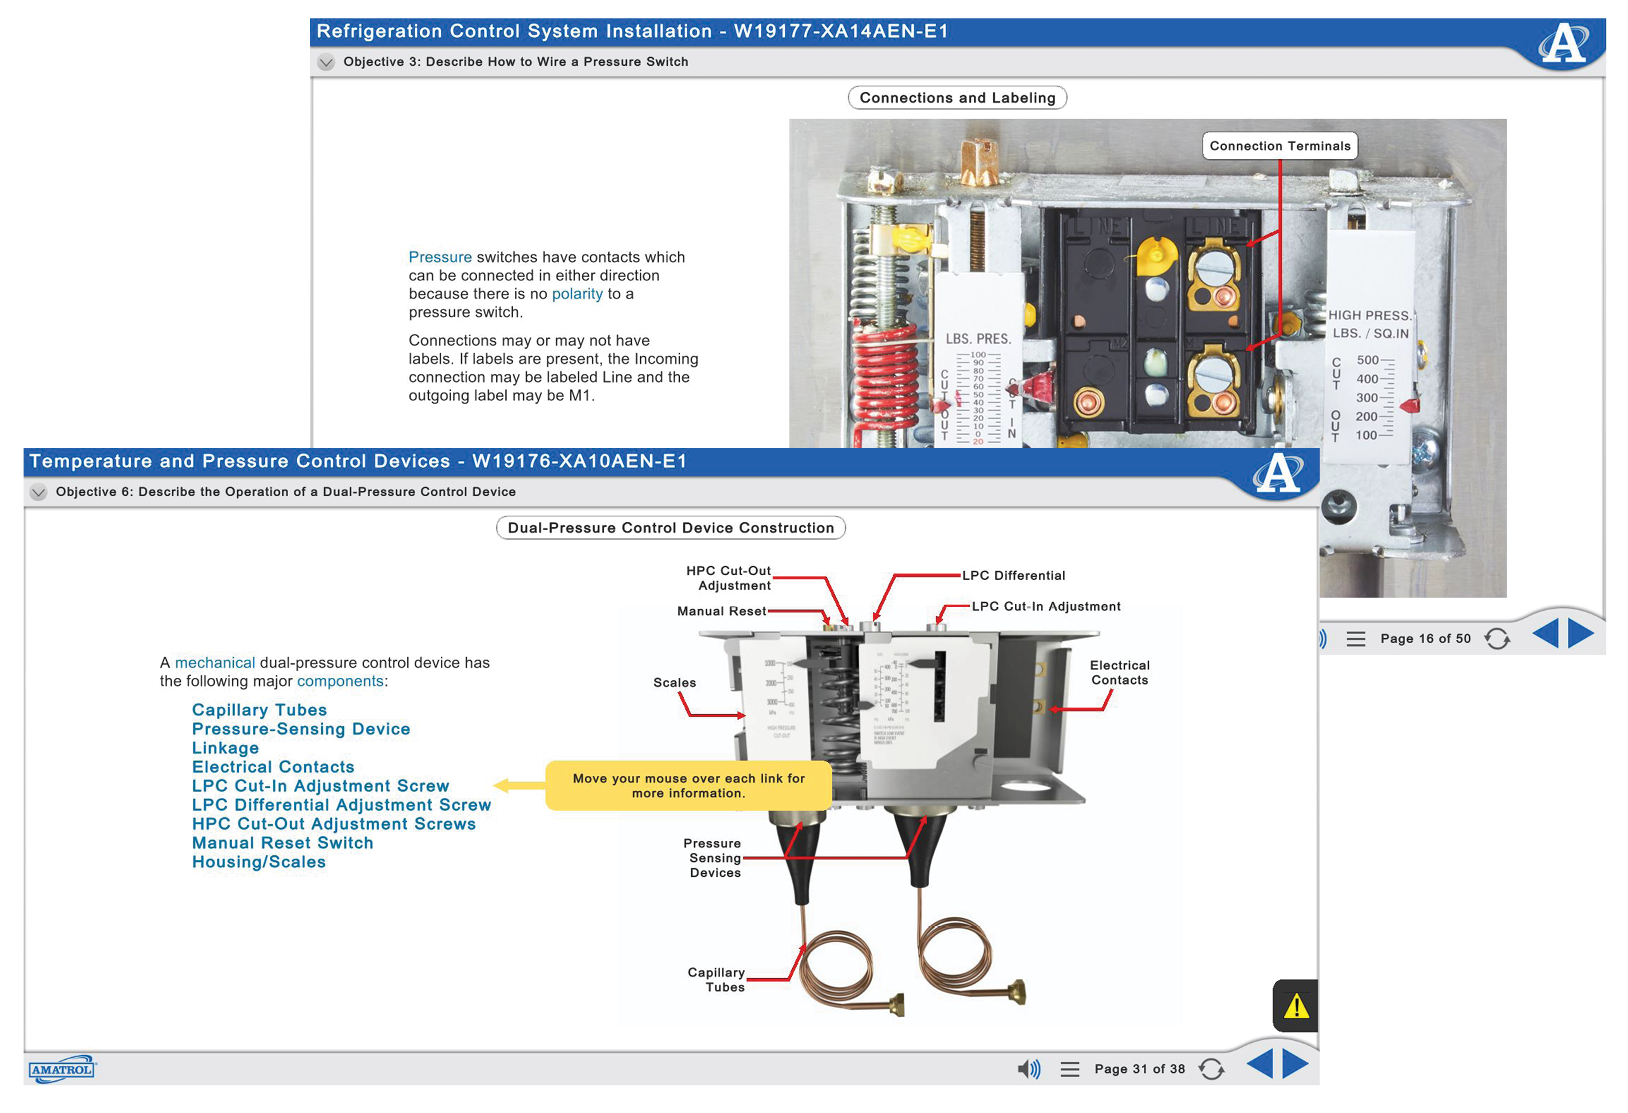 Amatrol T7300 HVAC Motor Control Training System eLearning Curriculum